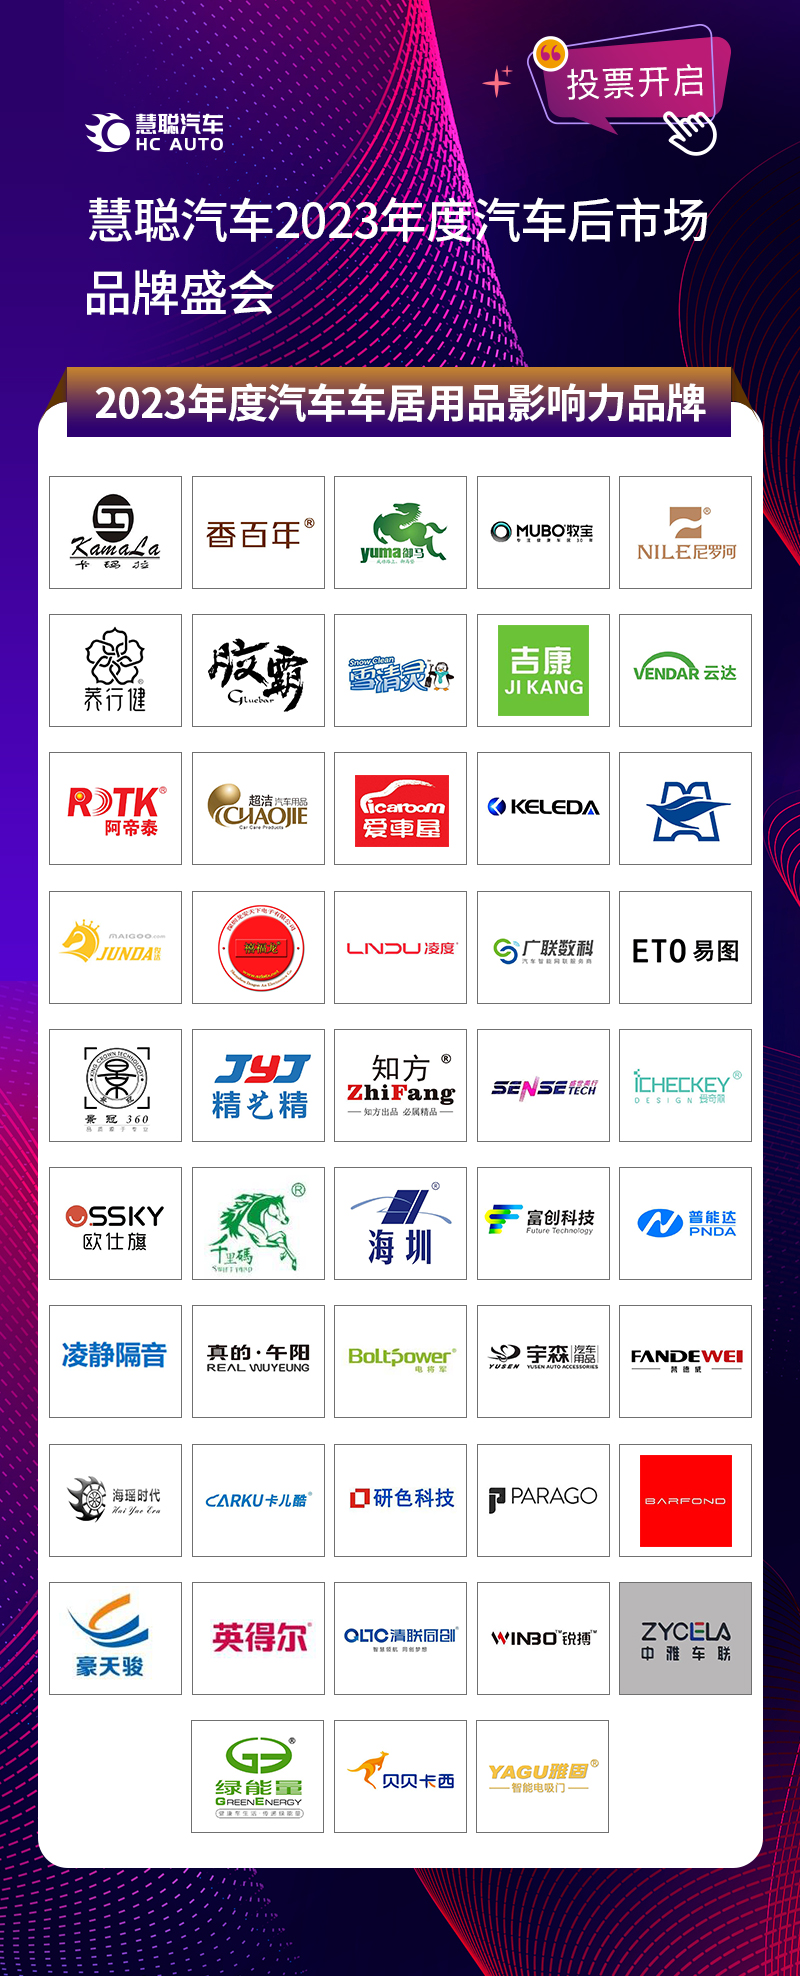 慧聪汽车2023年度汽车后市场品牌盛会20强网络投票阶段火热开启!